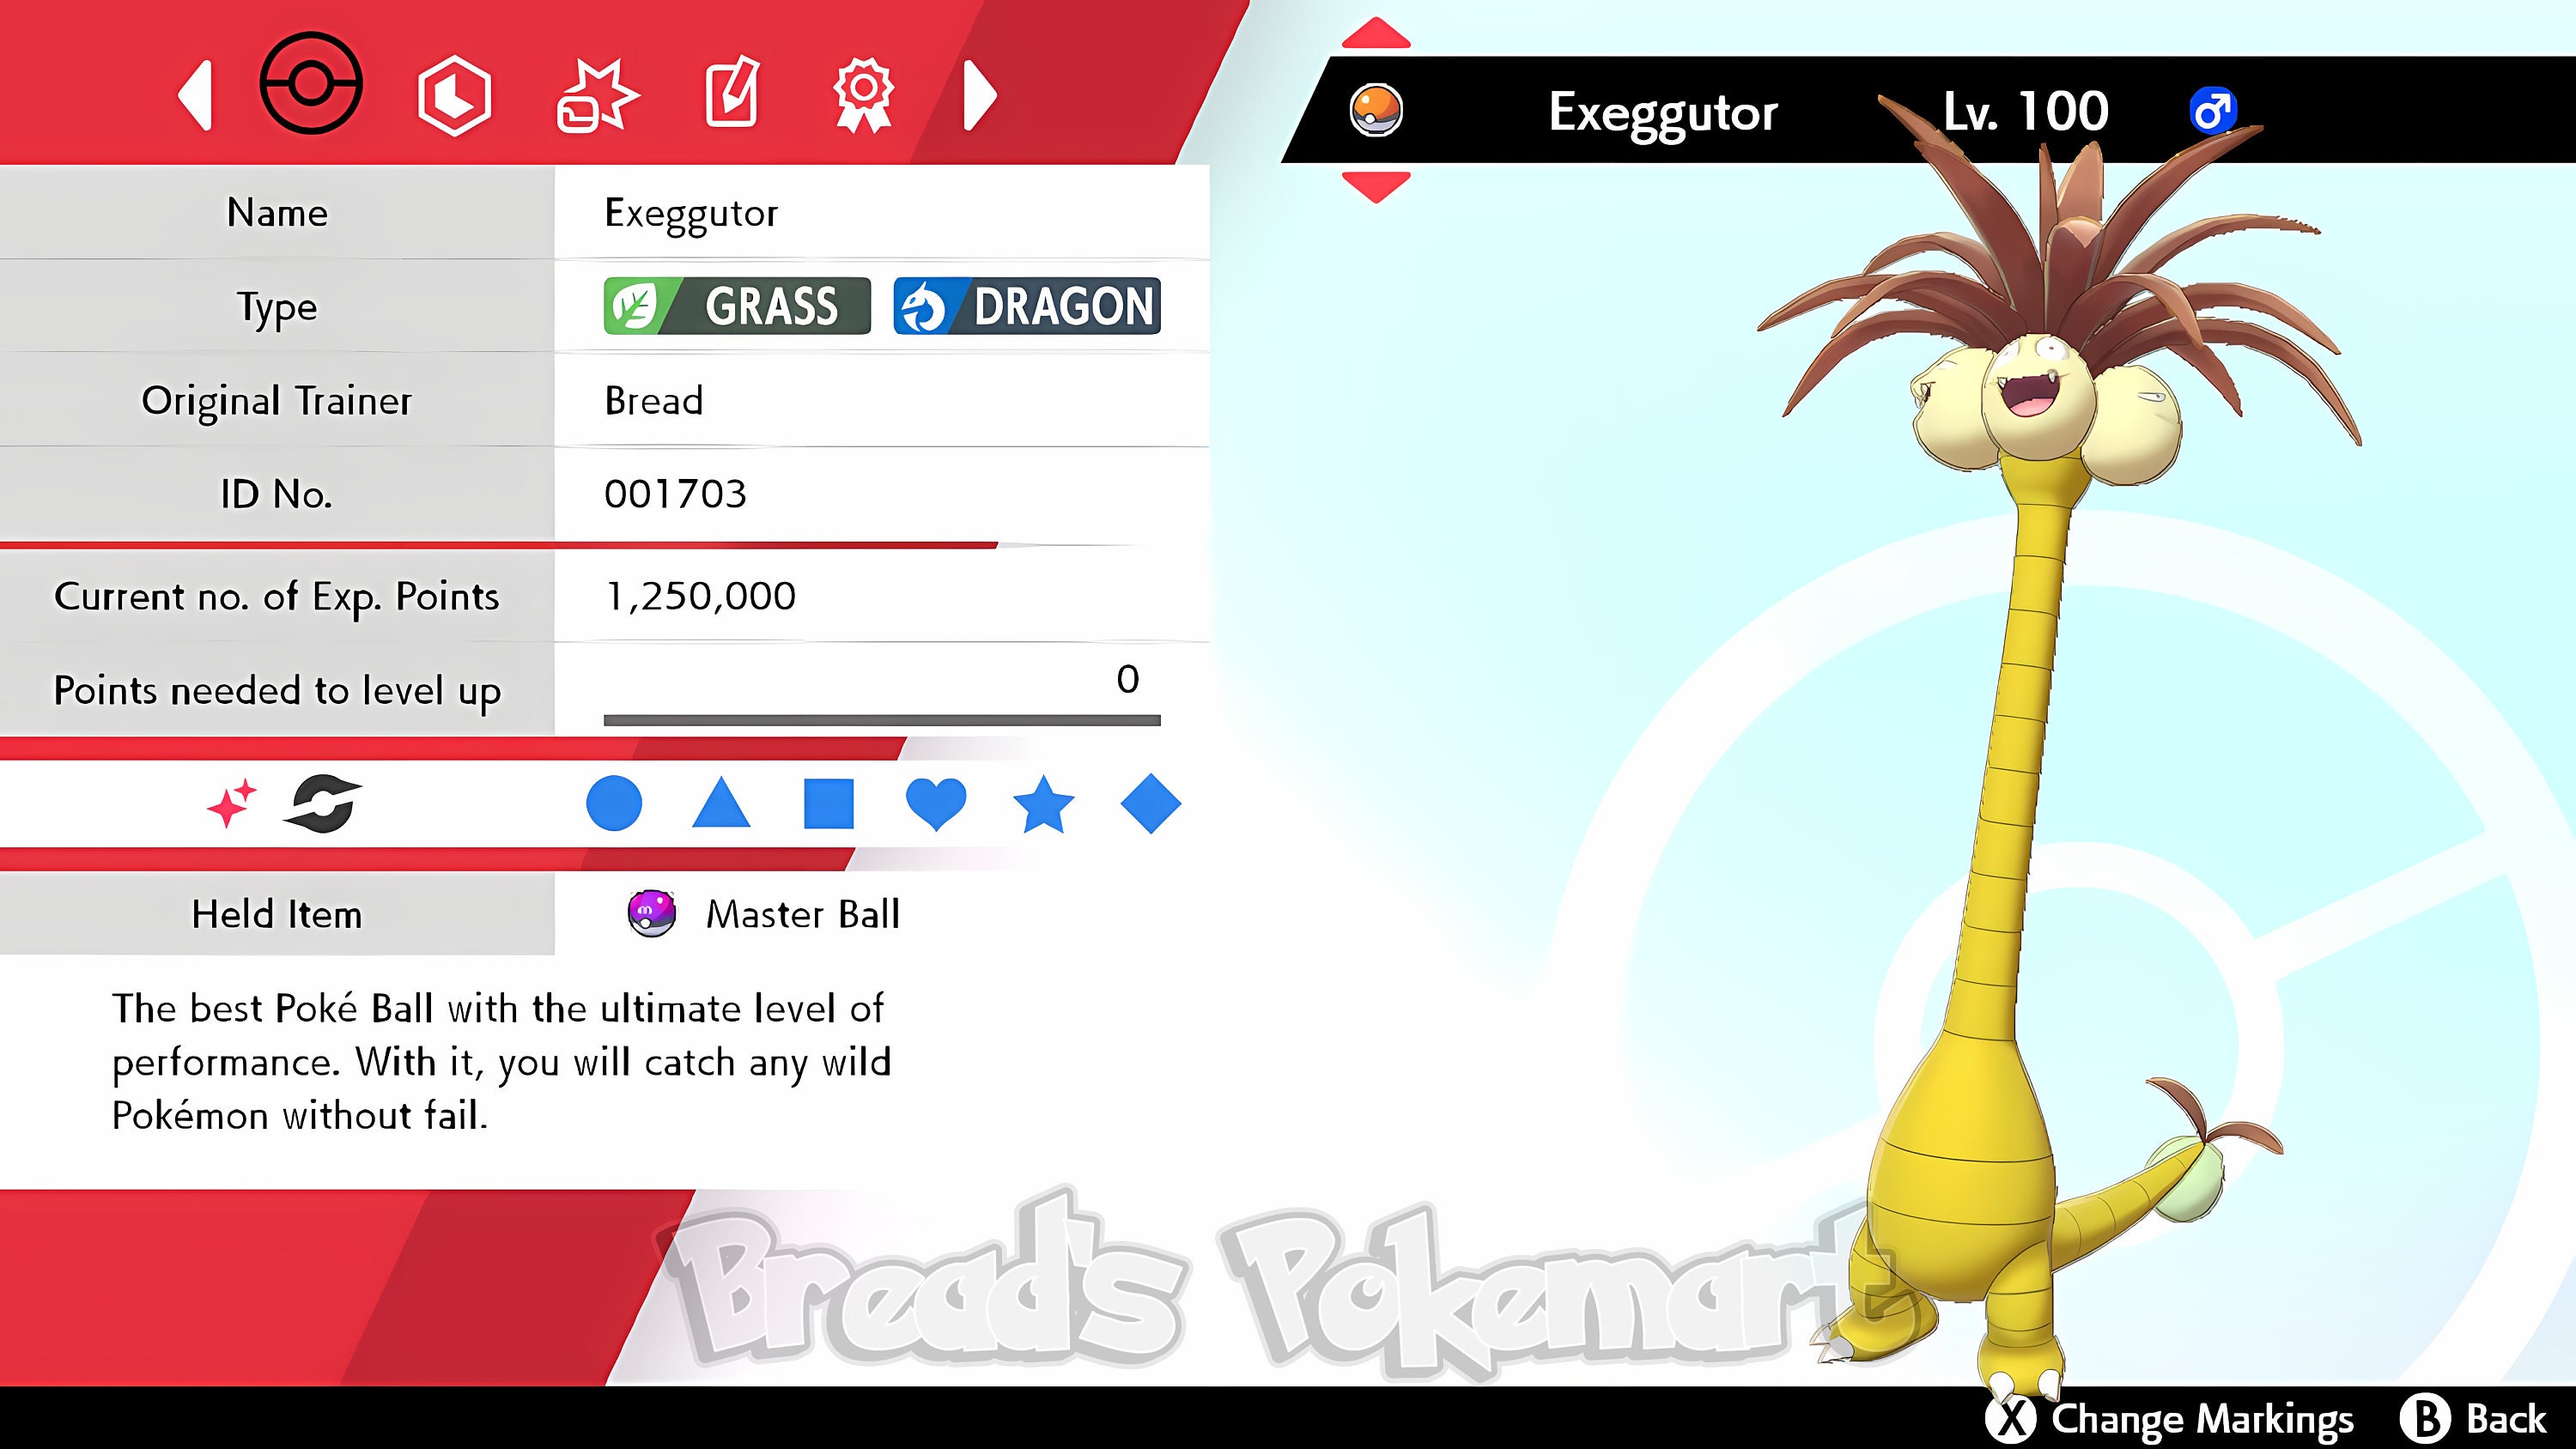 Alolan Exeggutor out now in Pokémon Go - Vooks